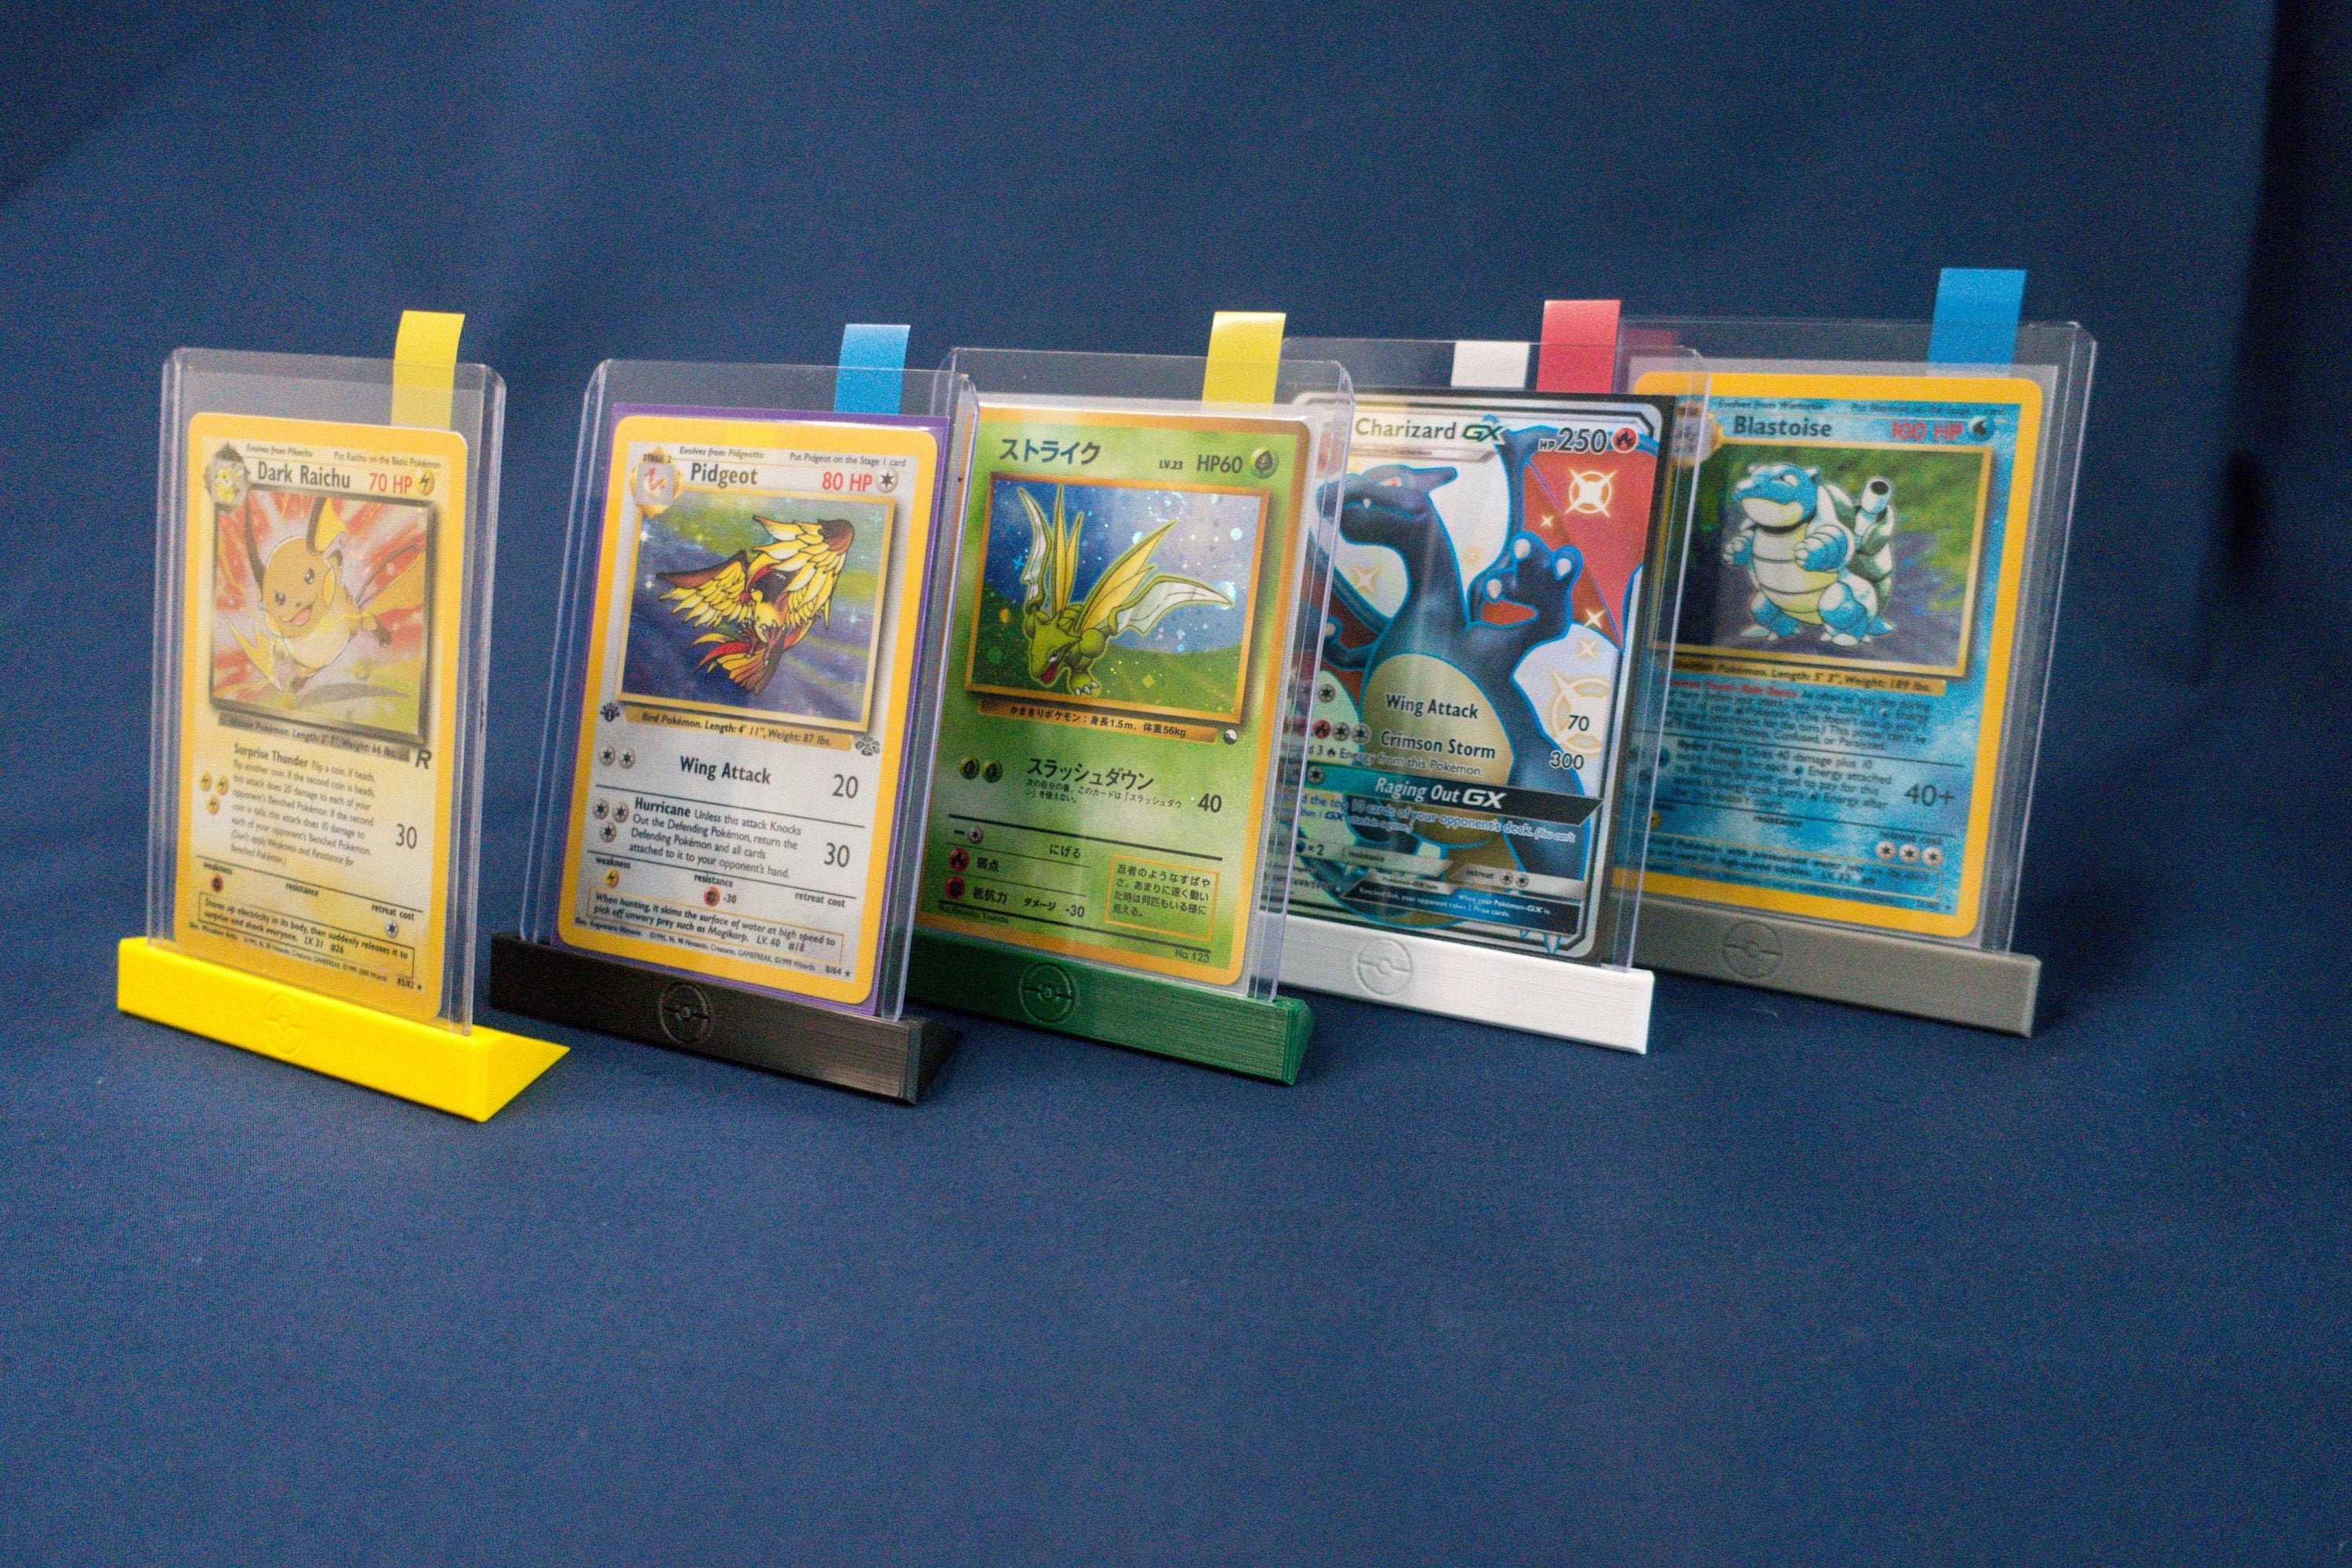 5 x Support de porte-carte Pokémon, supports d’affichage de cartes  Toploader Pokémon imprimés en 3D